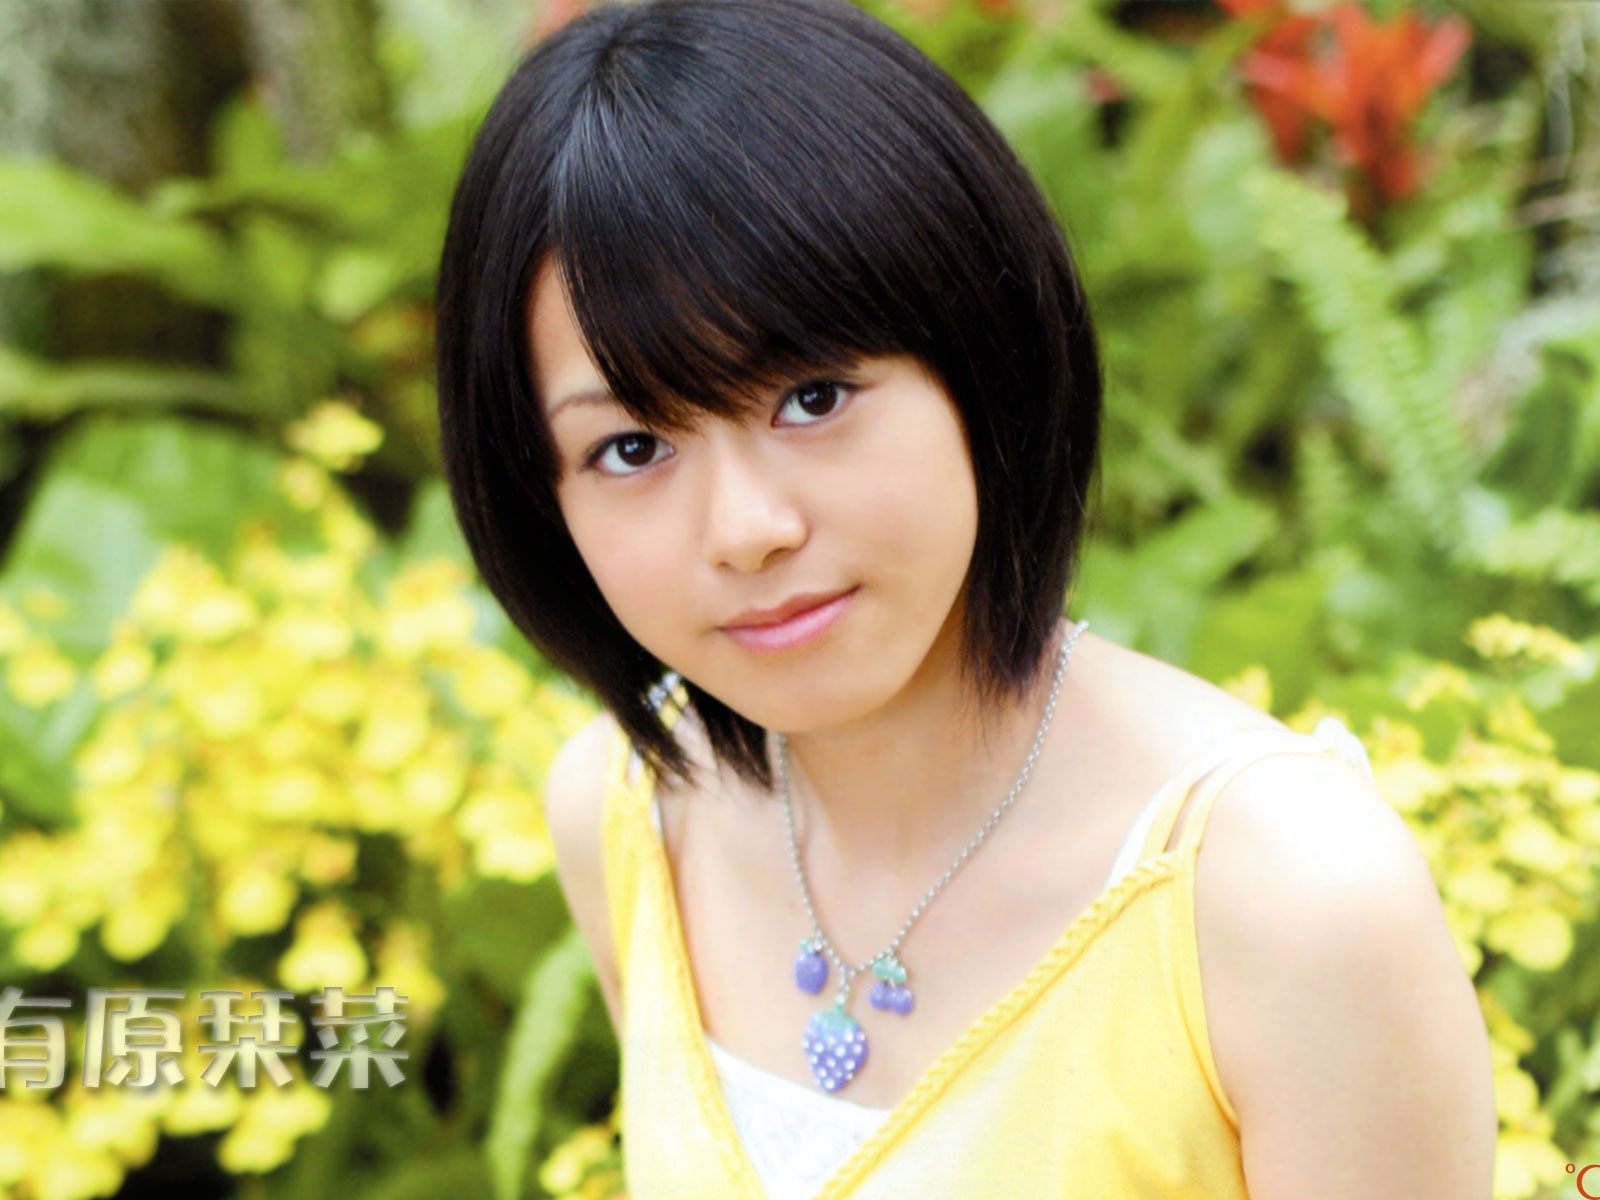 Cute belleza japonesa portafolio de fotos #9 - 1600x1200